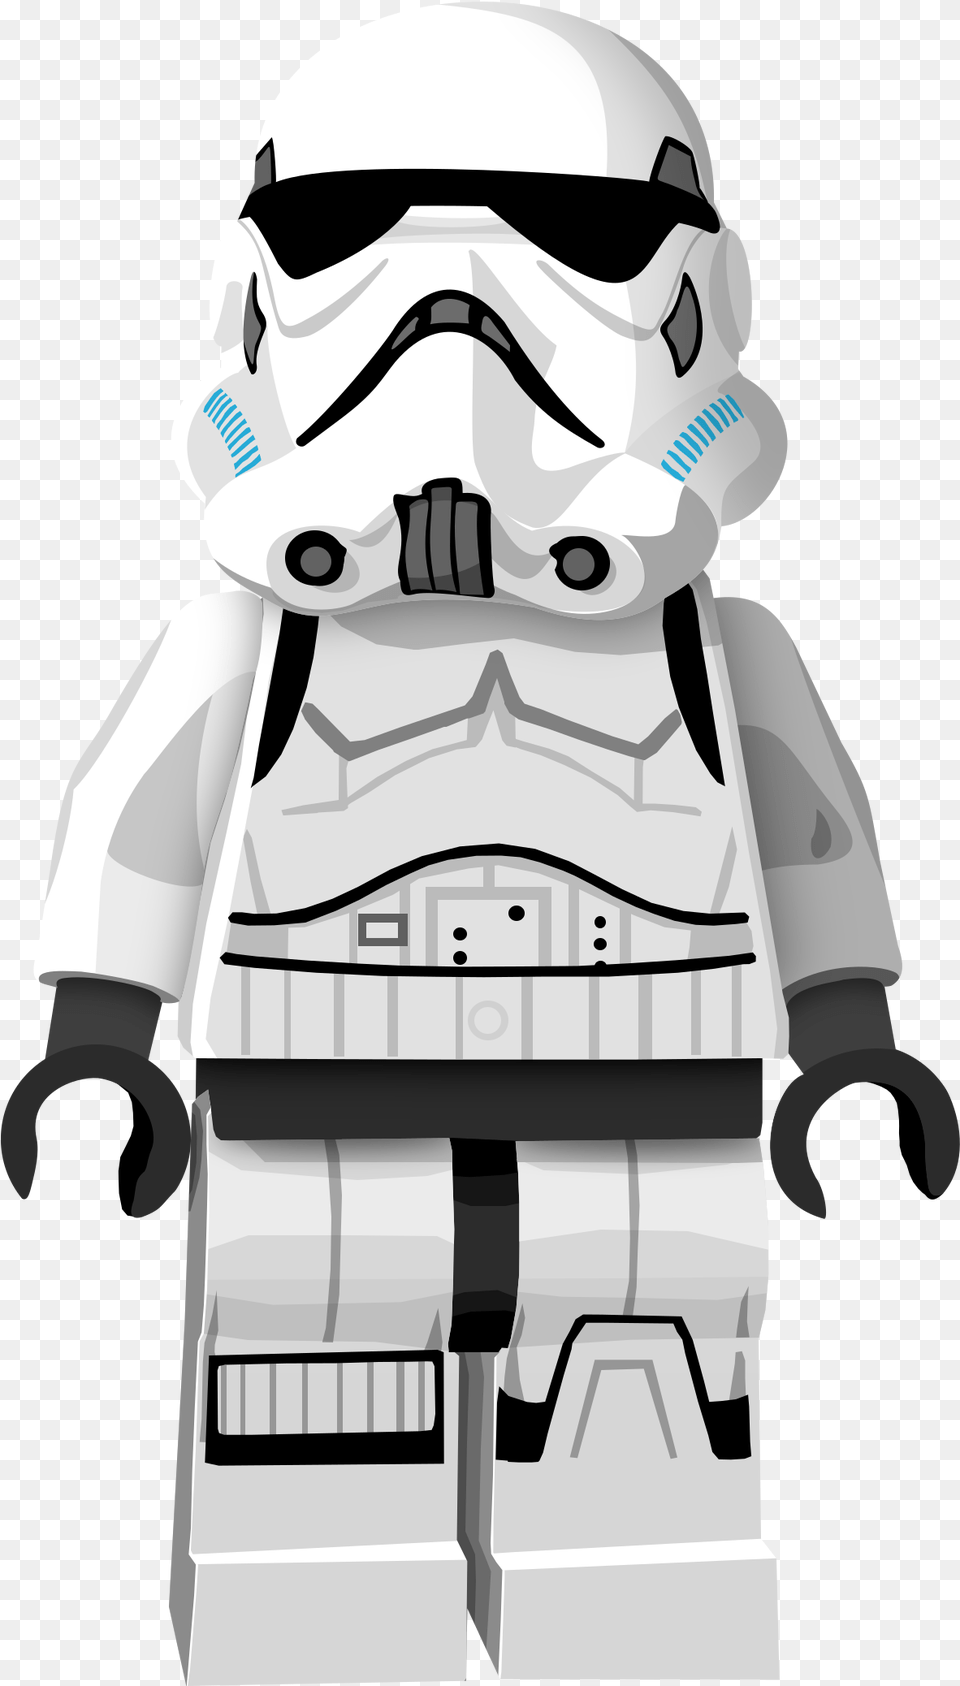 Stormtrooper Legominifigurelegostarwarsstormtrooper Stormtrooper Lego Star Wars, Robot, Baby, Person Free Png Download